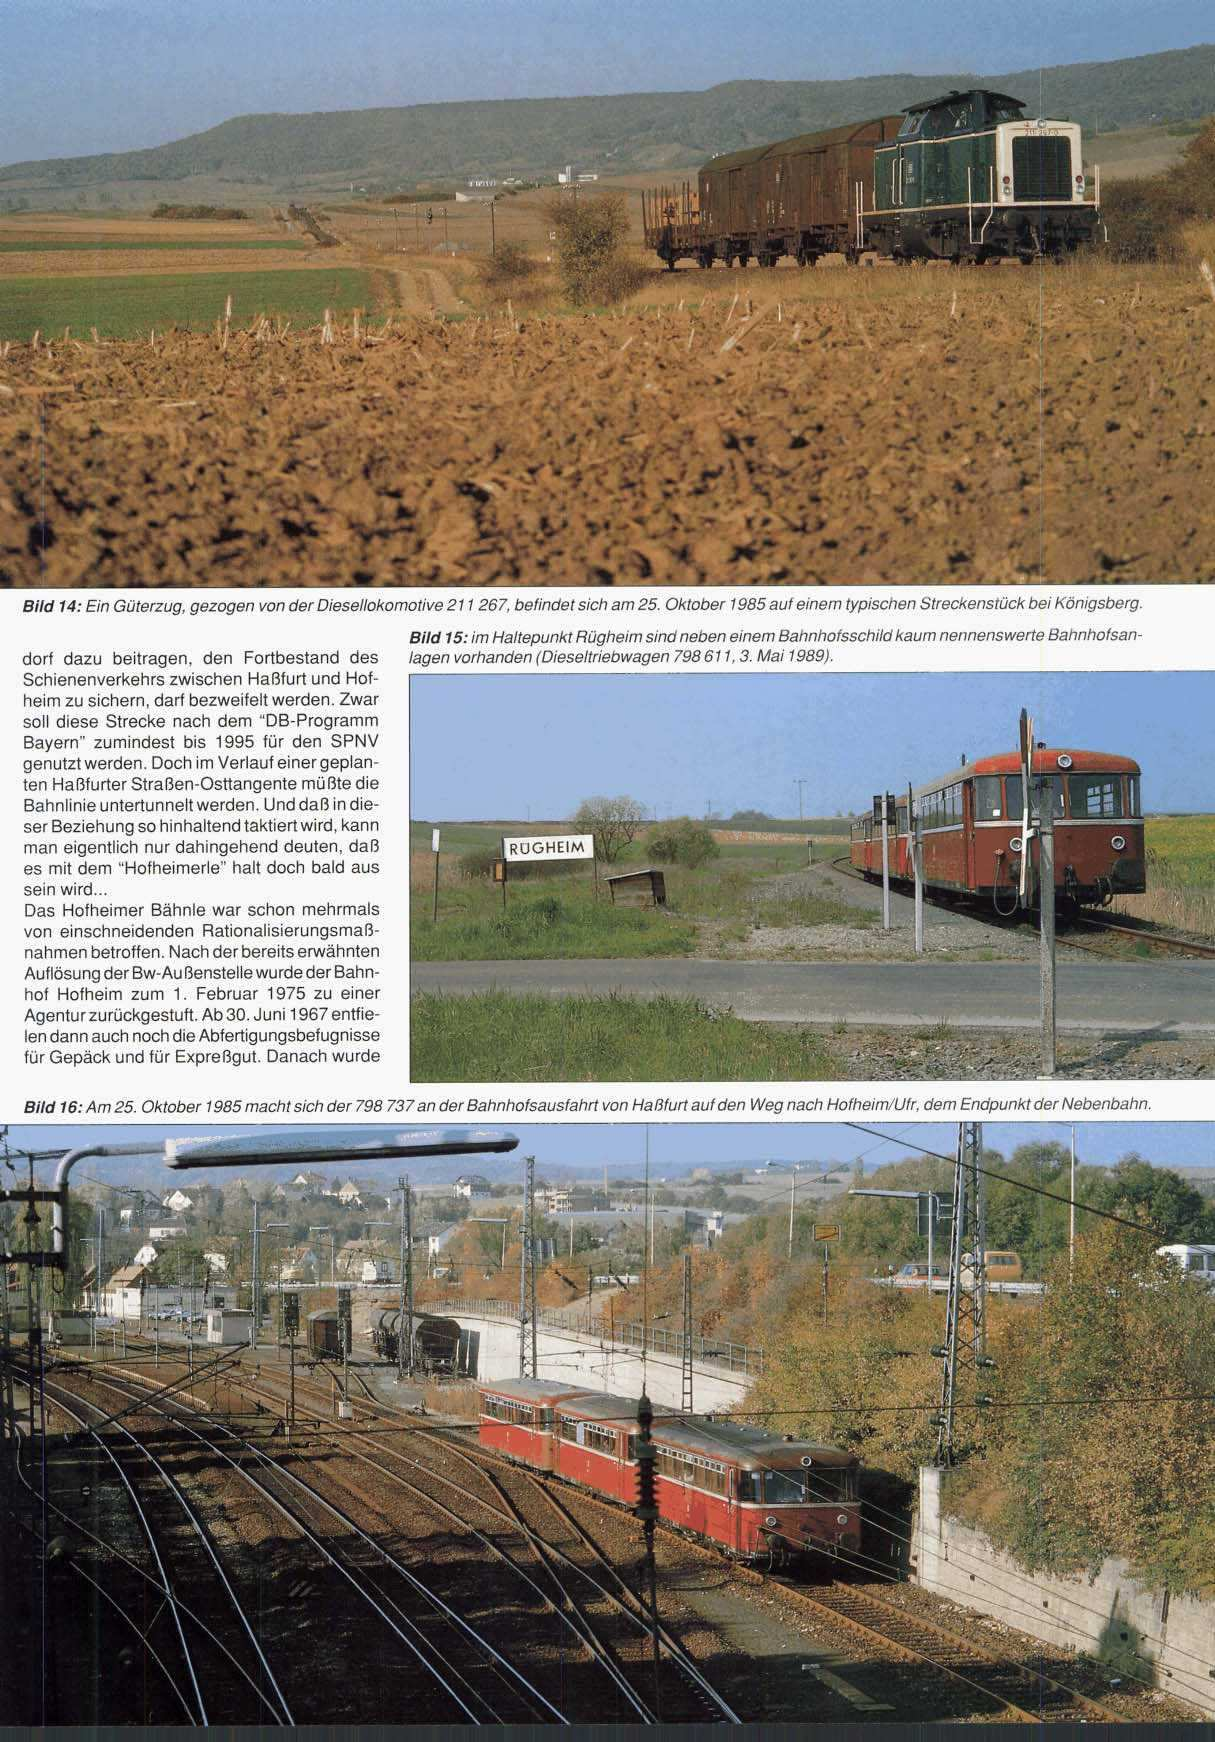 Bild 14: Ein Güterzug, gezogen von der Diesellokomotive 21 1 267, befindet sich am 25. Oktober 1985 auf einem typischen Streckenstück bei Königsberg.